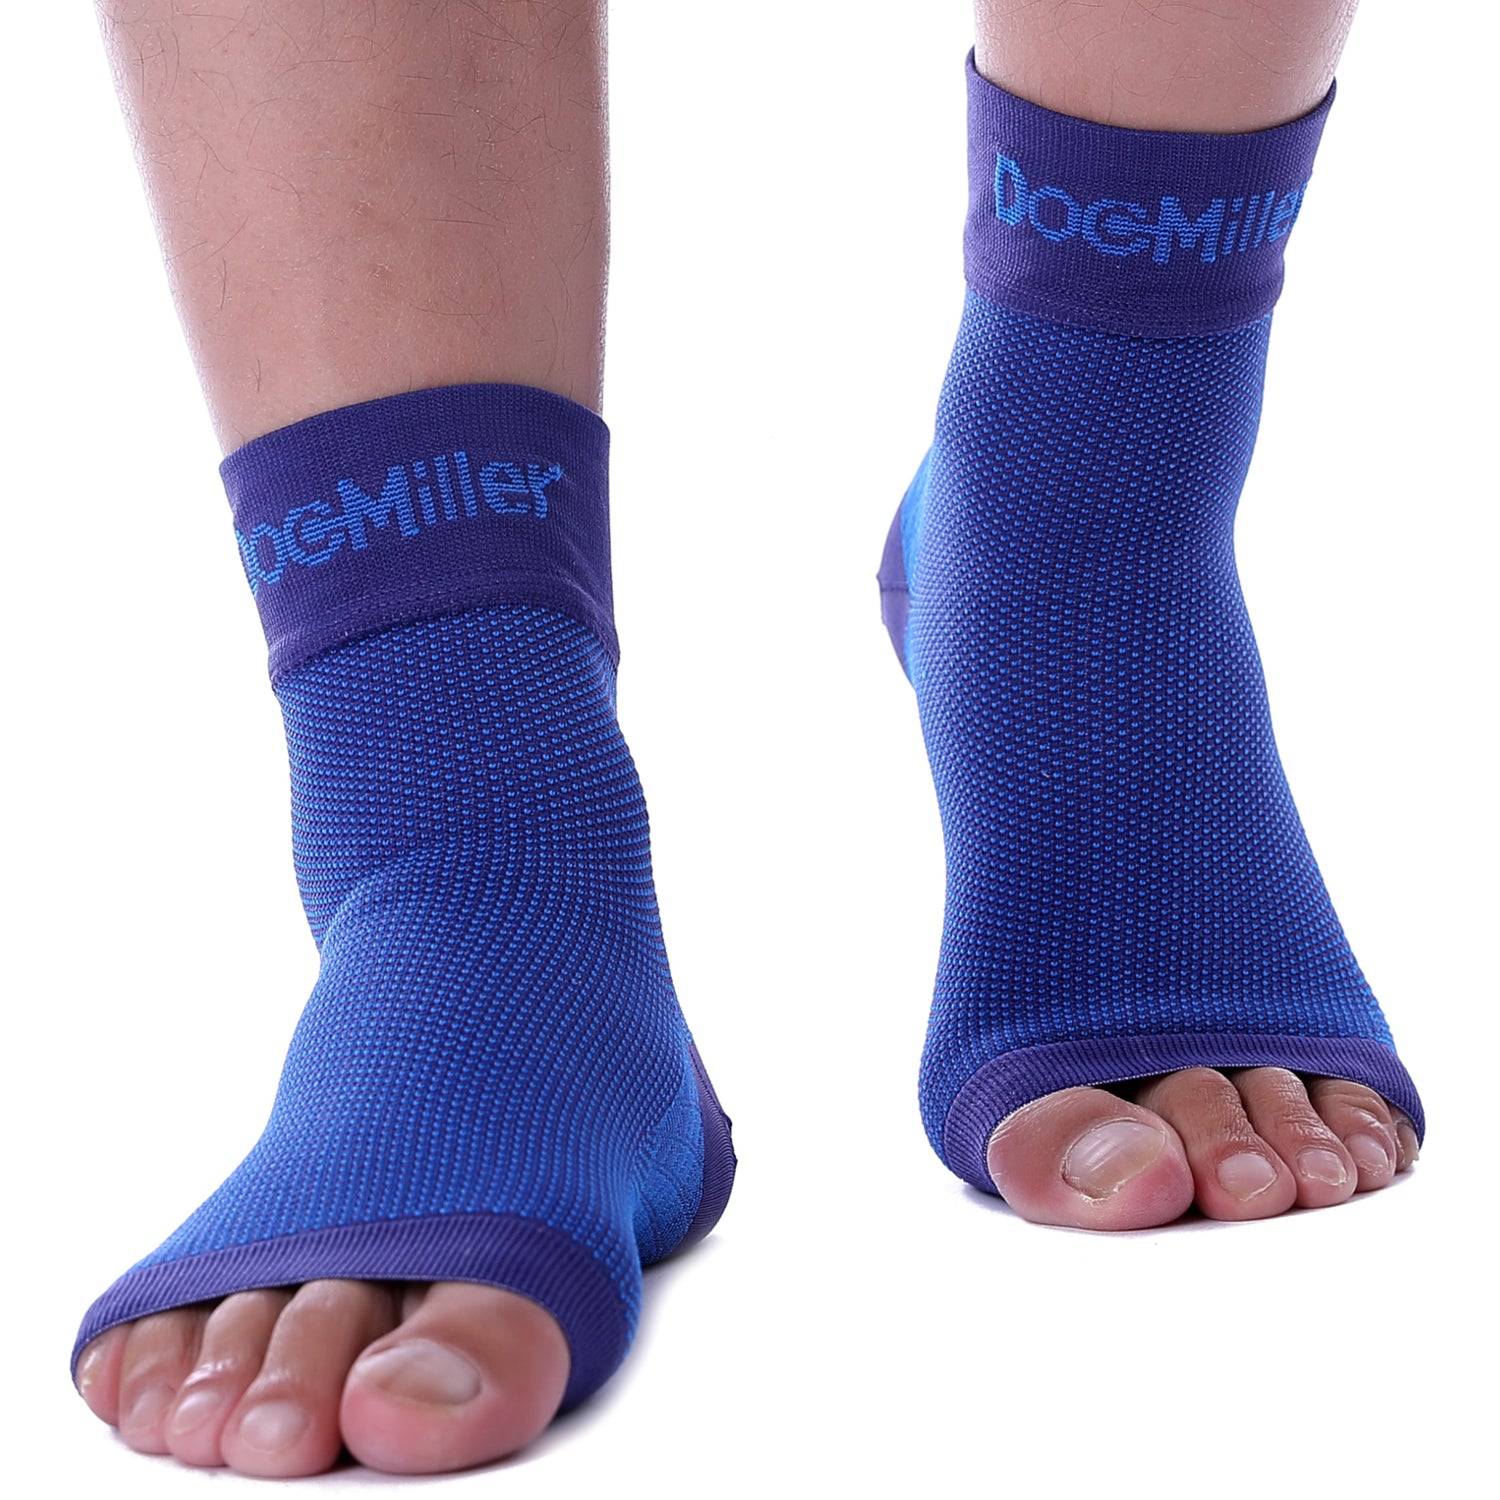 Doc Miller's Medical Grade Ankle Compression Sleeve 30-40 mmHg